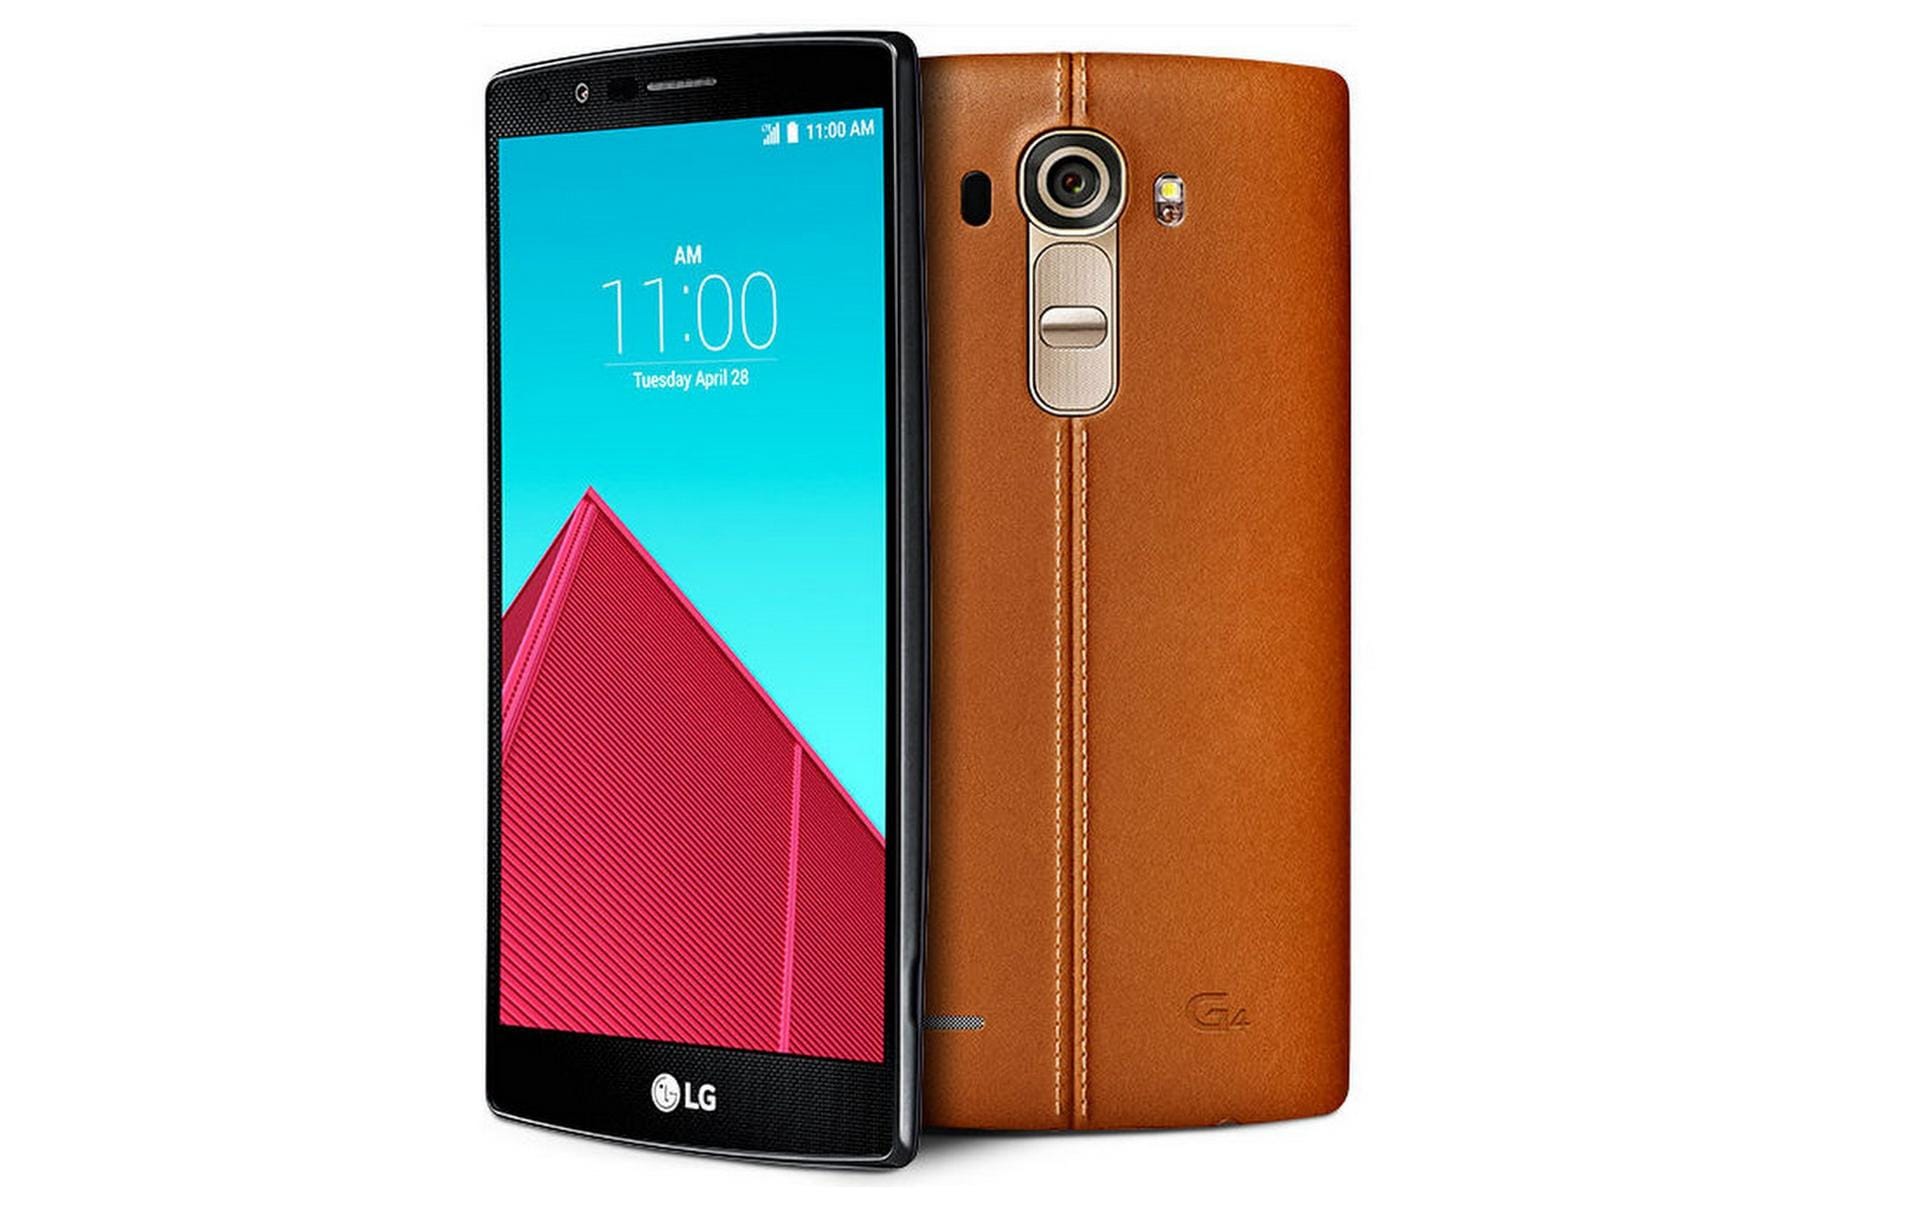 Das LG G4 ist das aktuelle Flaggschiff des koreanischen Herstellers. Dessen Kamera gehört zu den besten, die der Smartphones-Markt zu bieten hat.